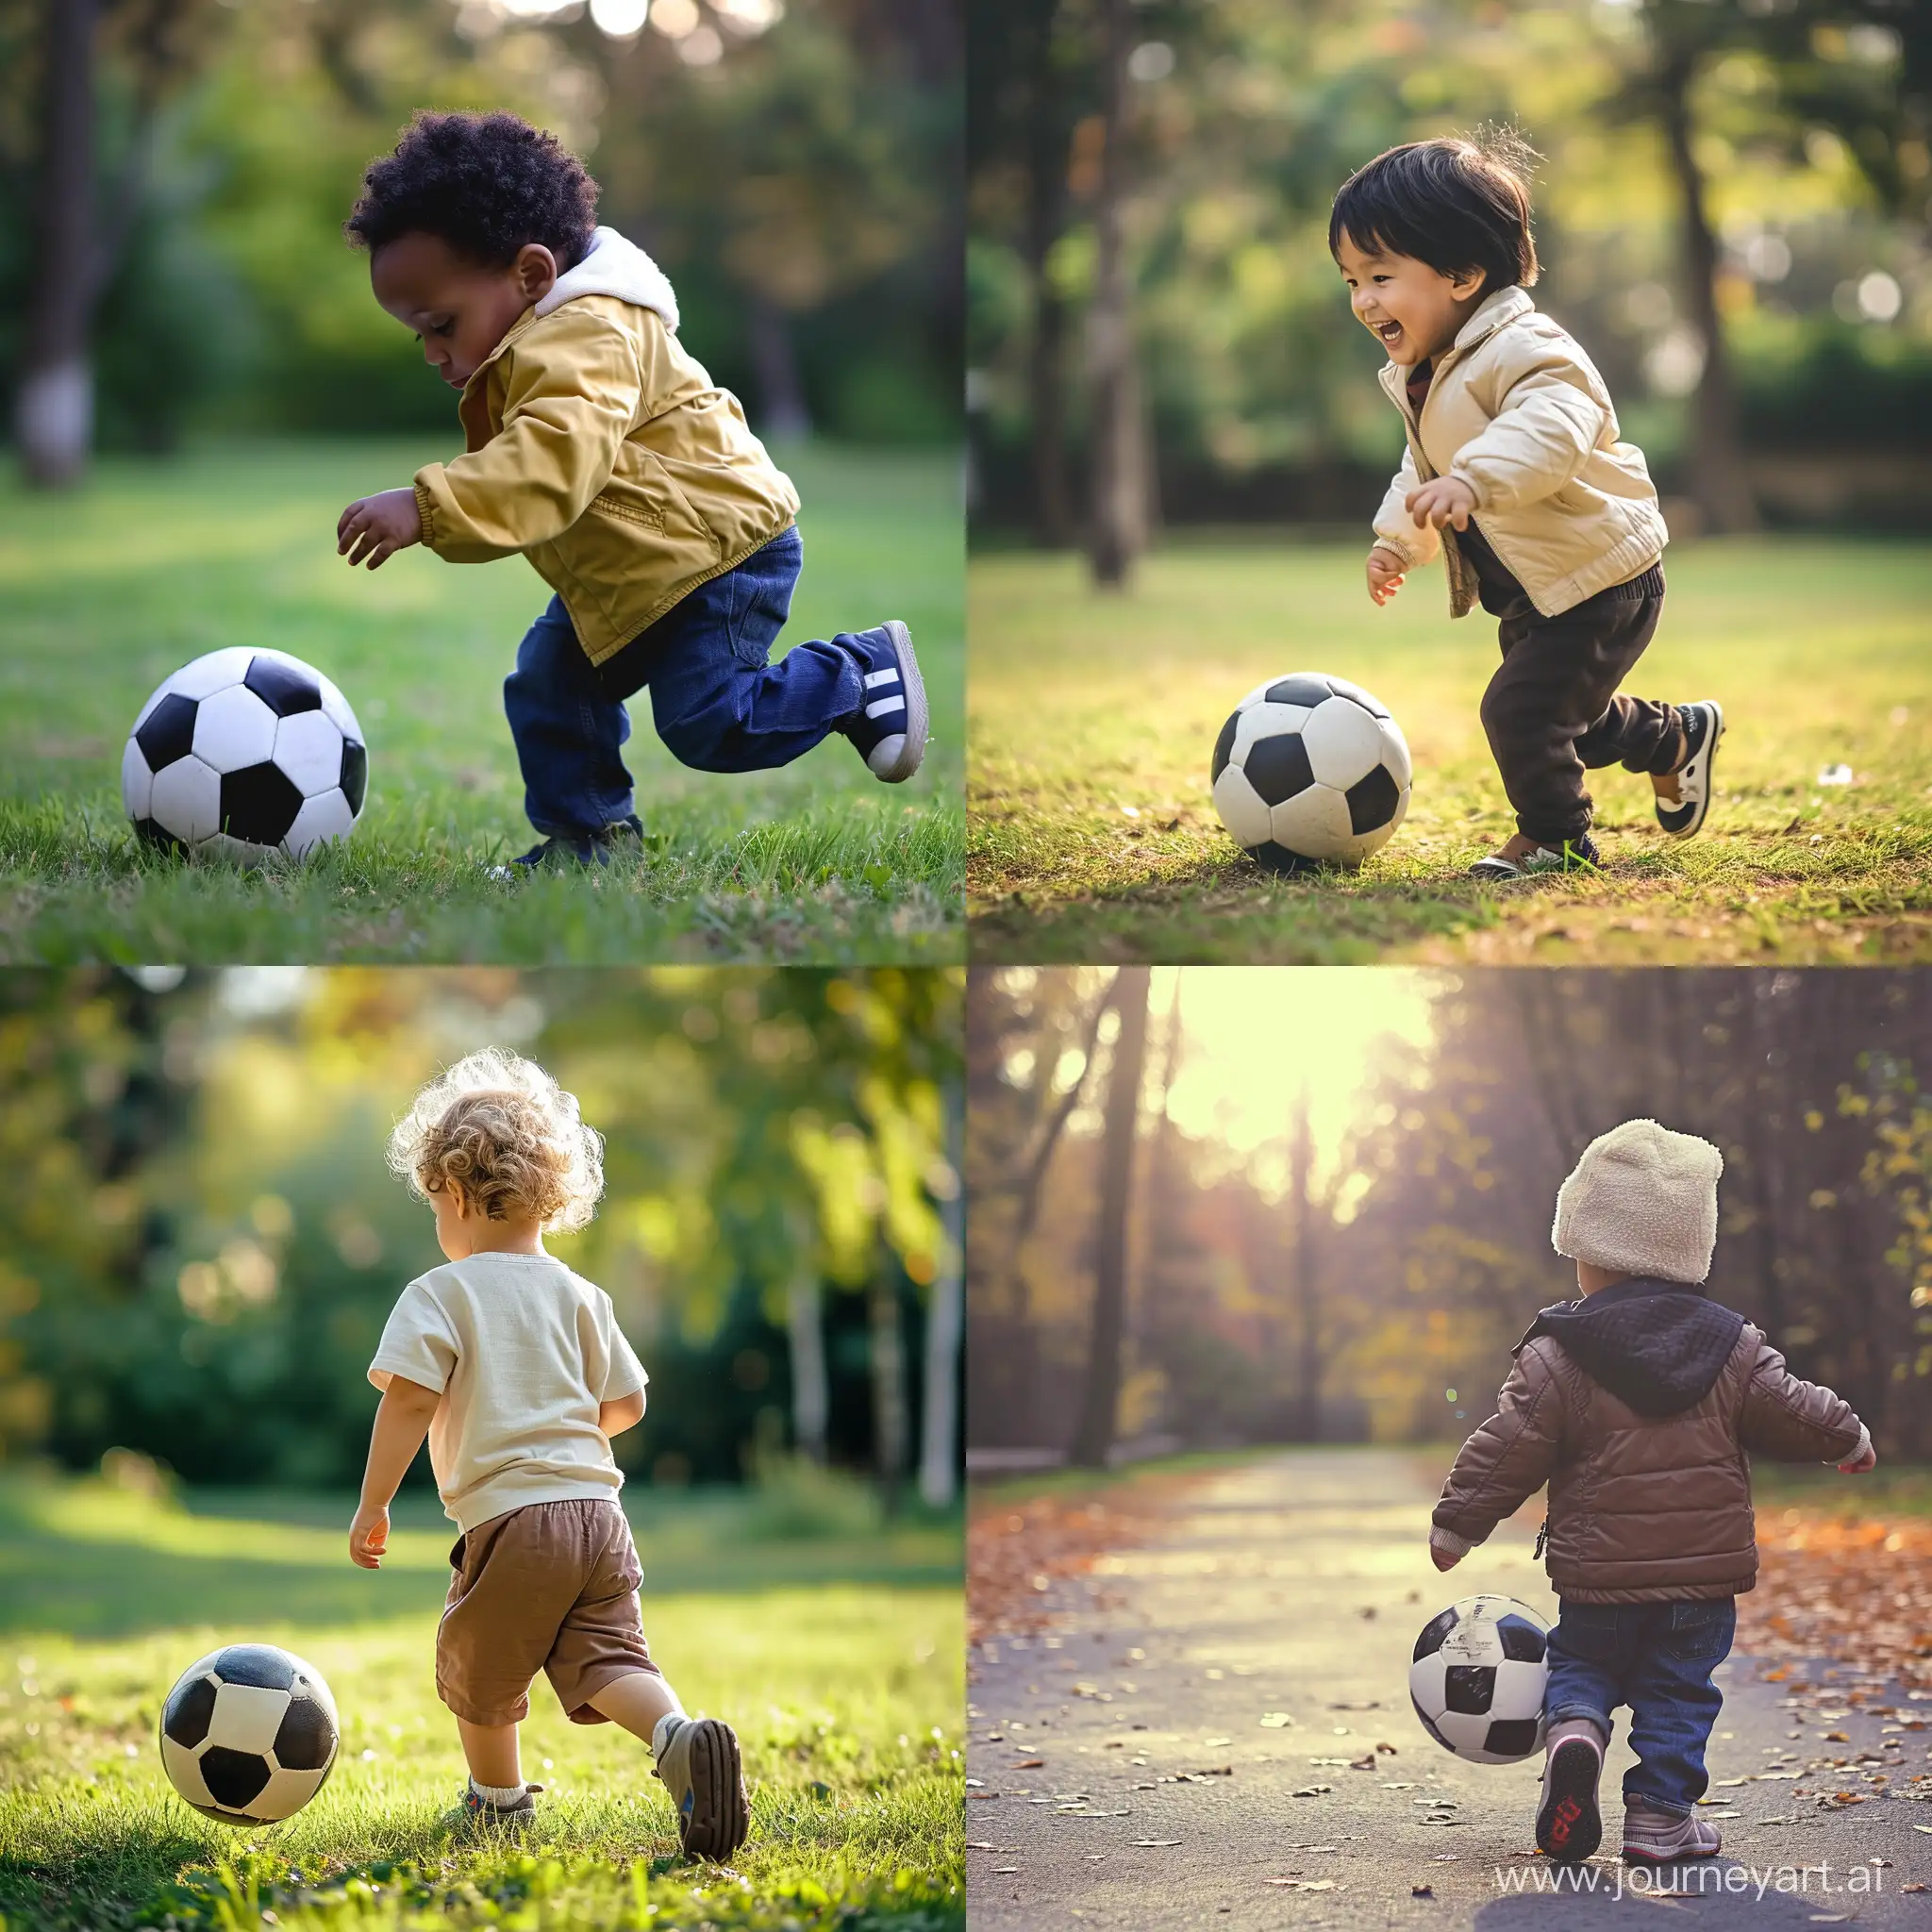 Joyful-Child-Playing-Football